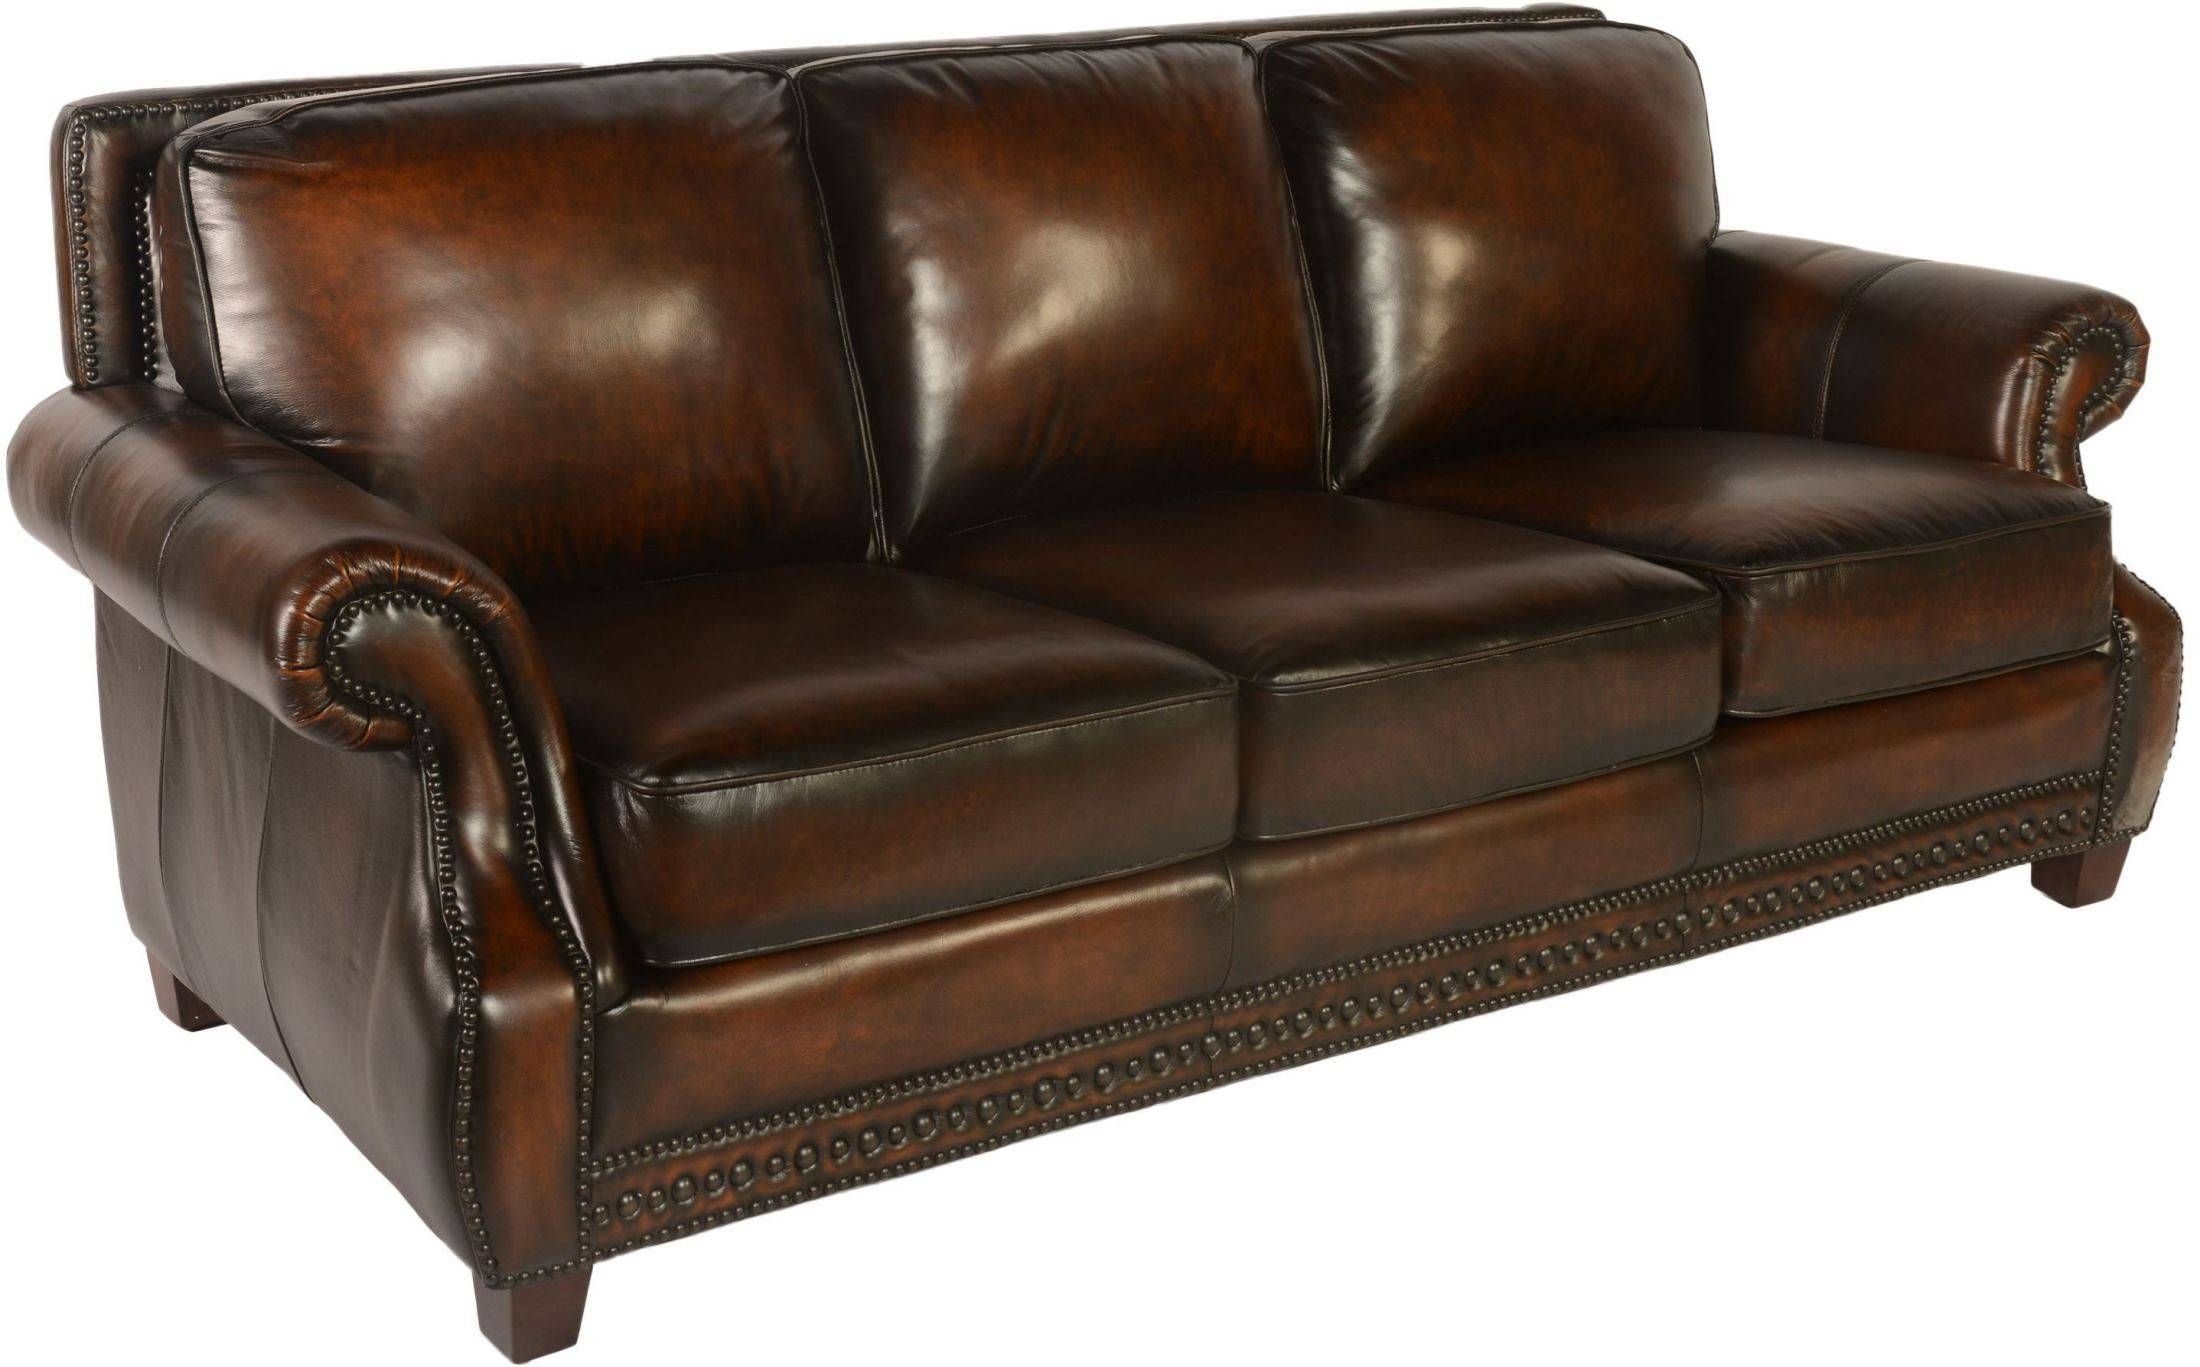 Prato Cocoa Brompton Leather Sofa From Lazzaro | Coleman Furniture For Brompton Leather Sofas (View 5 of 15)